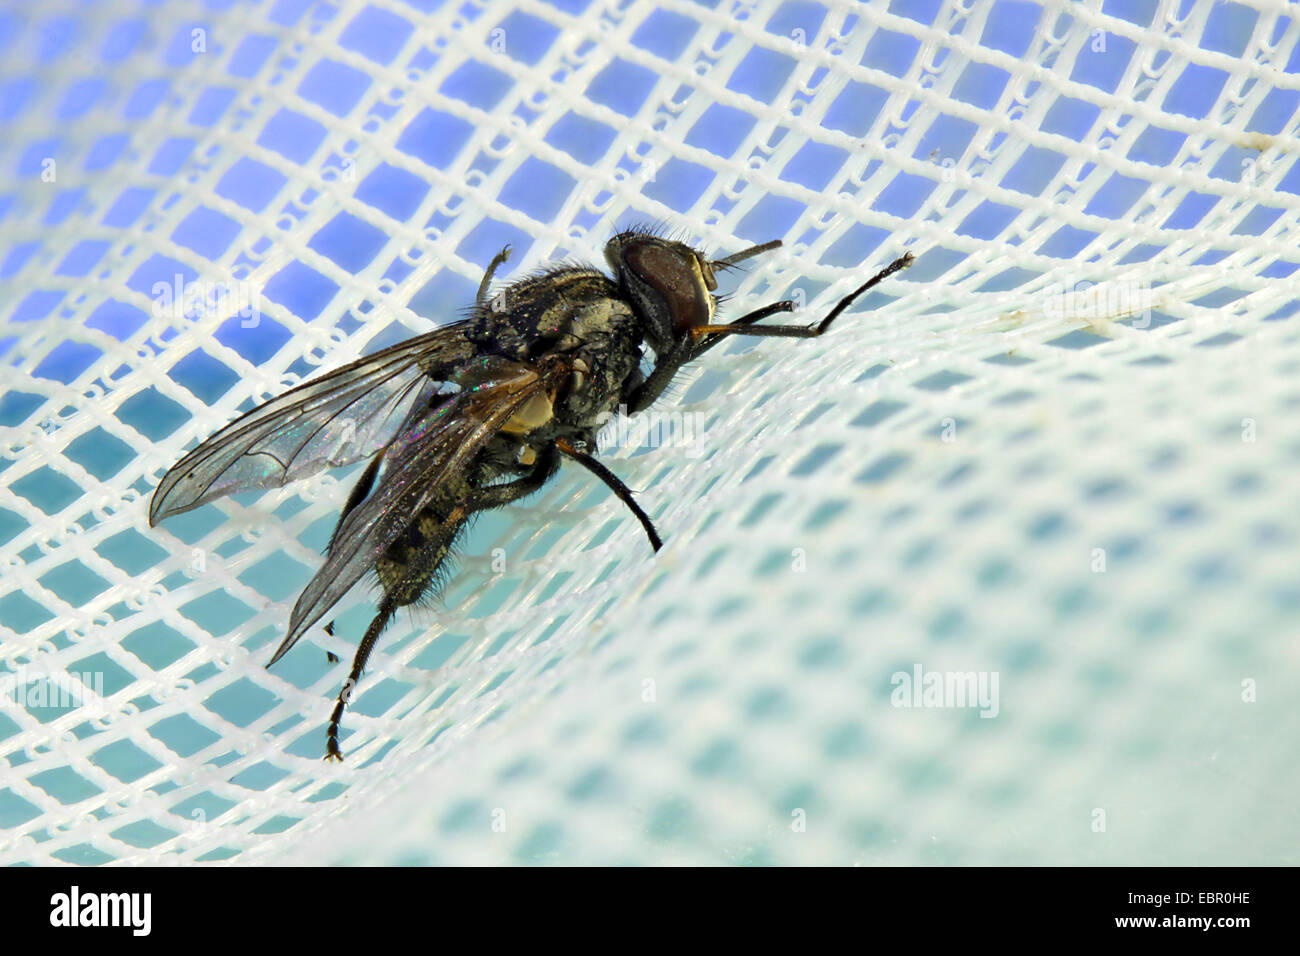 Mosca de los establos, perro volar, picadura de mosca común (Stomoxys calcitrans), telas, Alemania Foto de stock